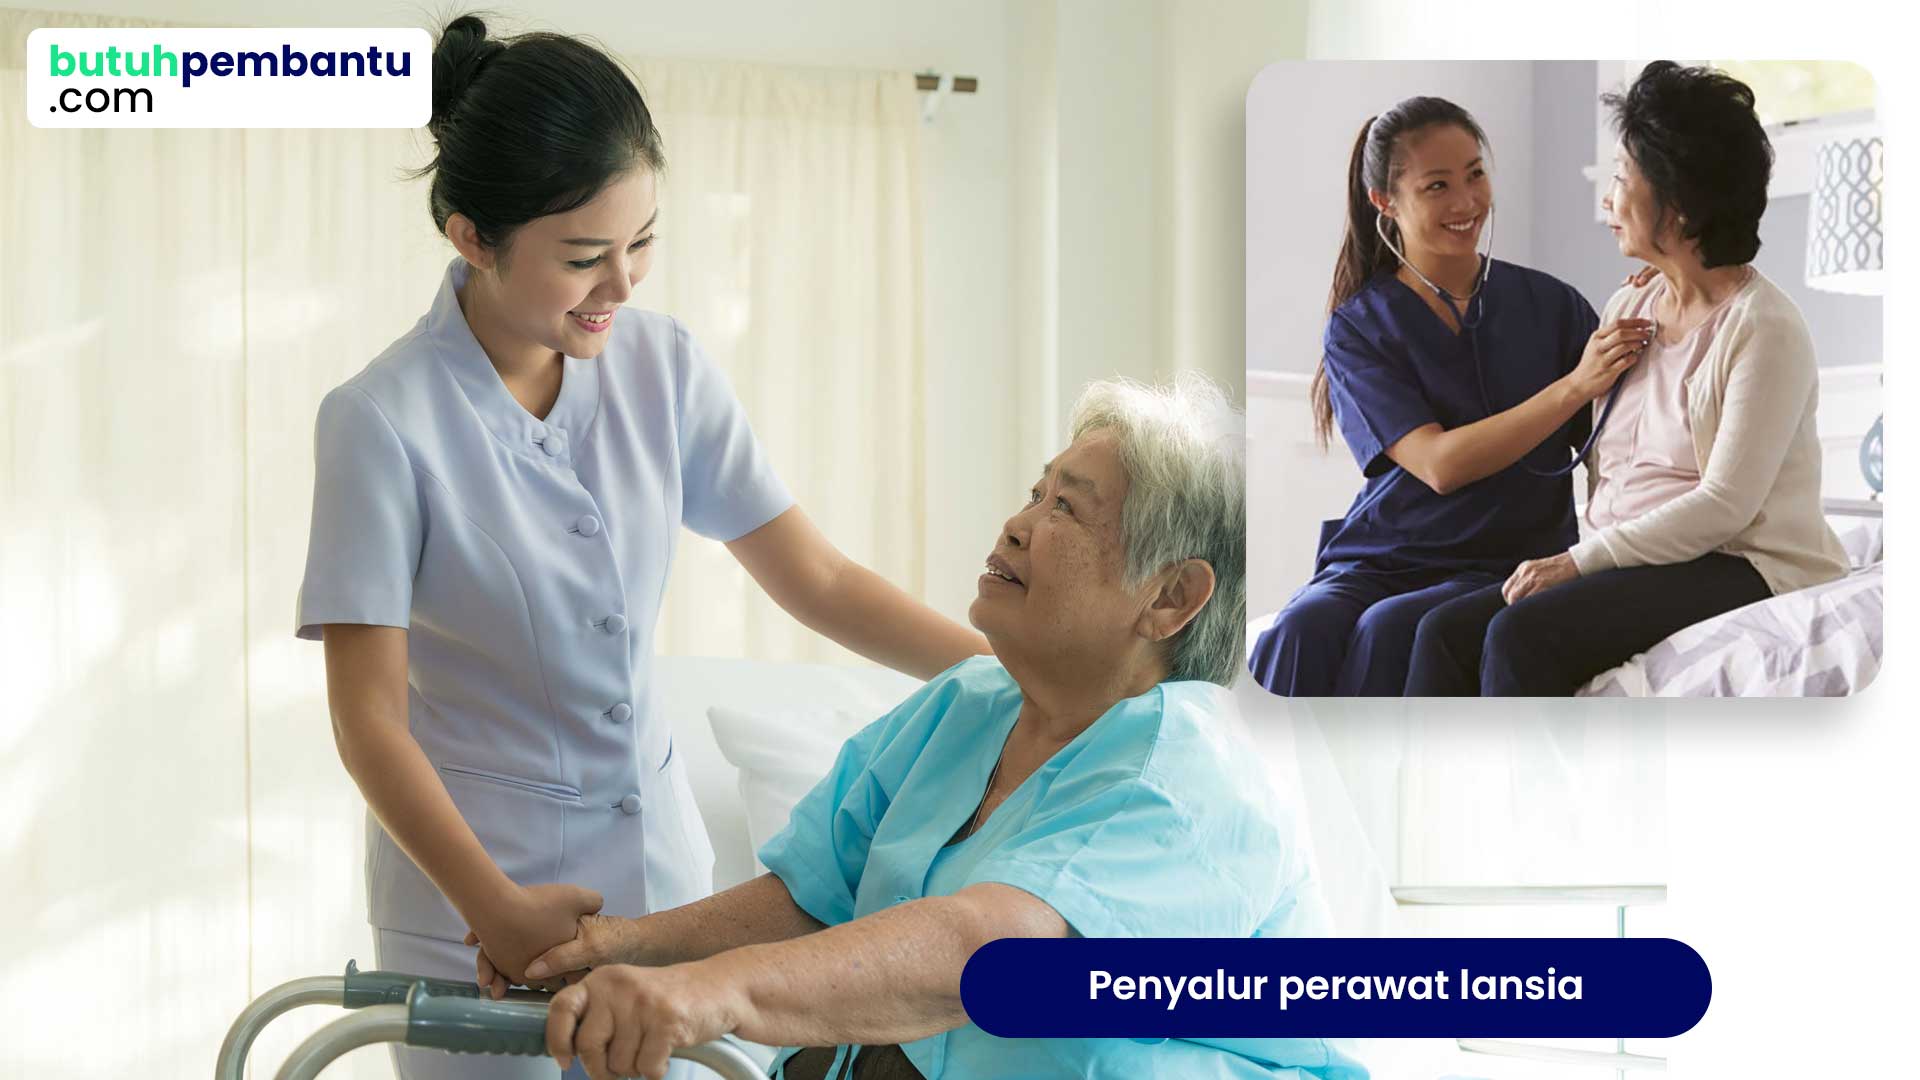 Penyalur perawat lansia terpercaya resmi - butuhpembantu.com